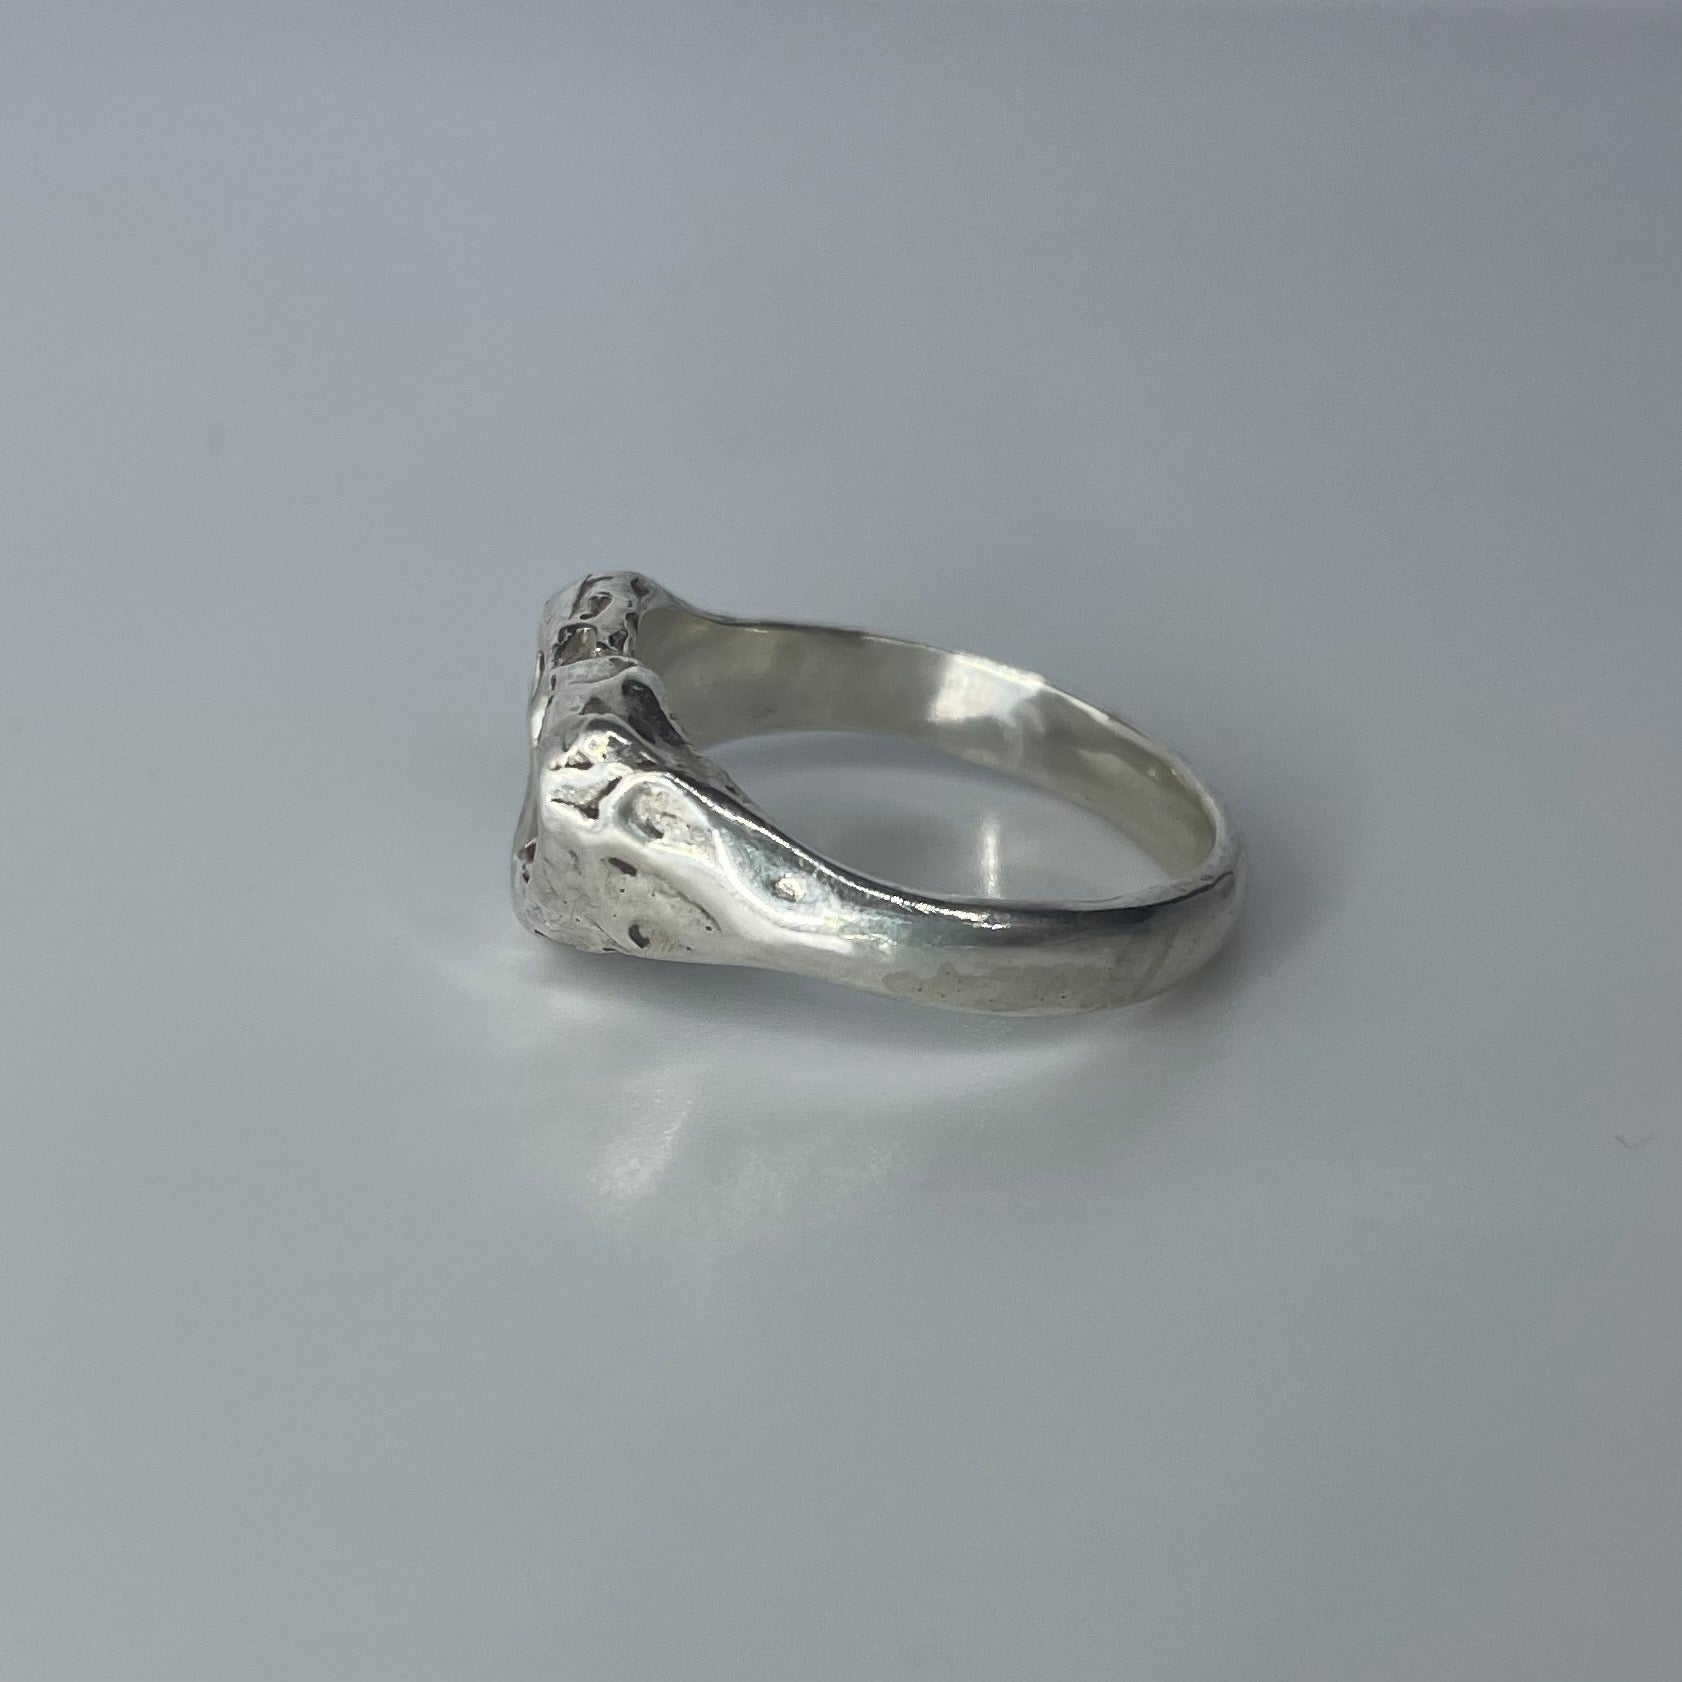 Vintage Melt Design Silver Ring 925 - アクセサリー